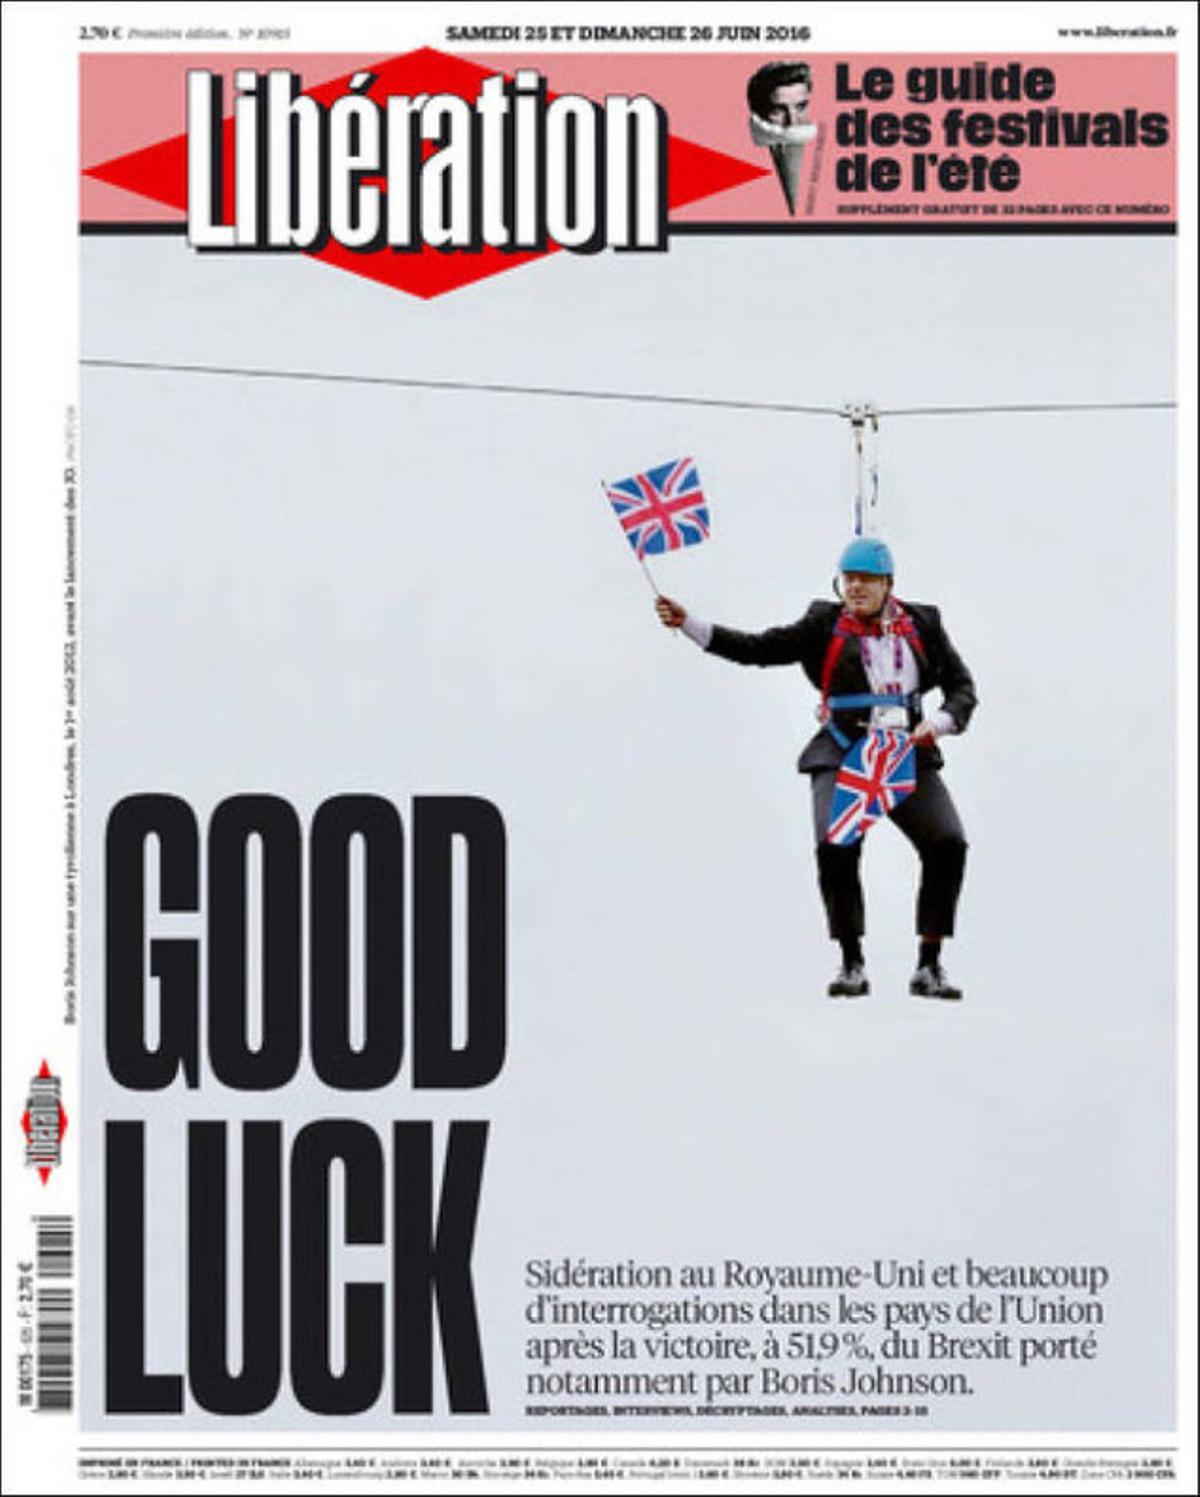 La portada del francés ’Liberation’.